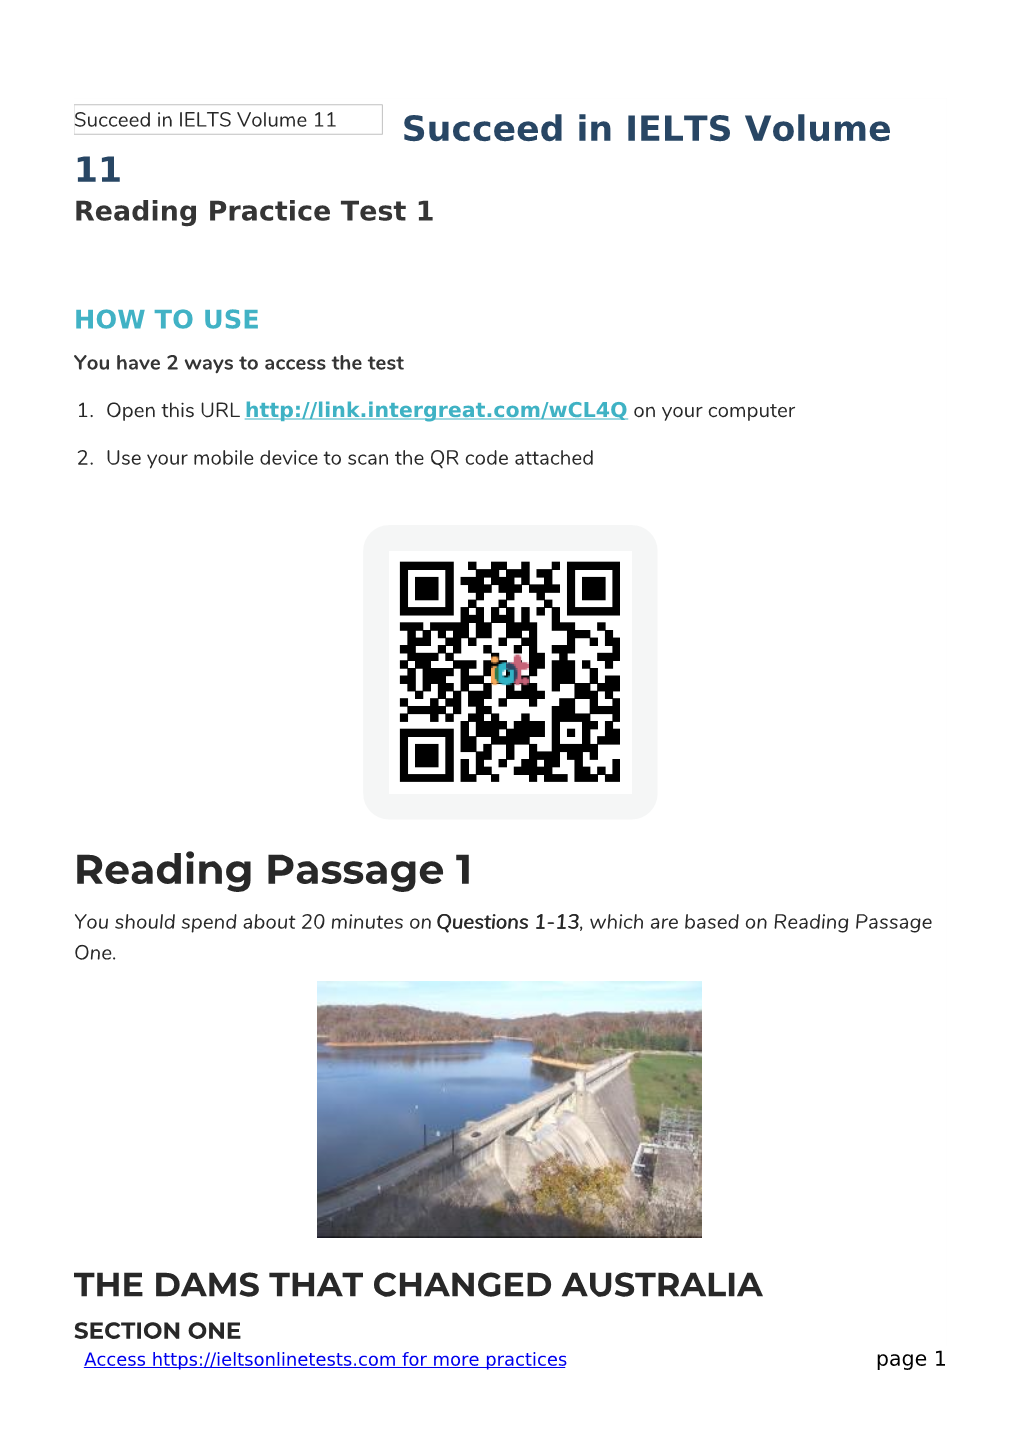 Reading Practice Test 1